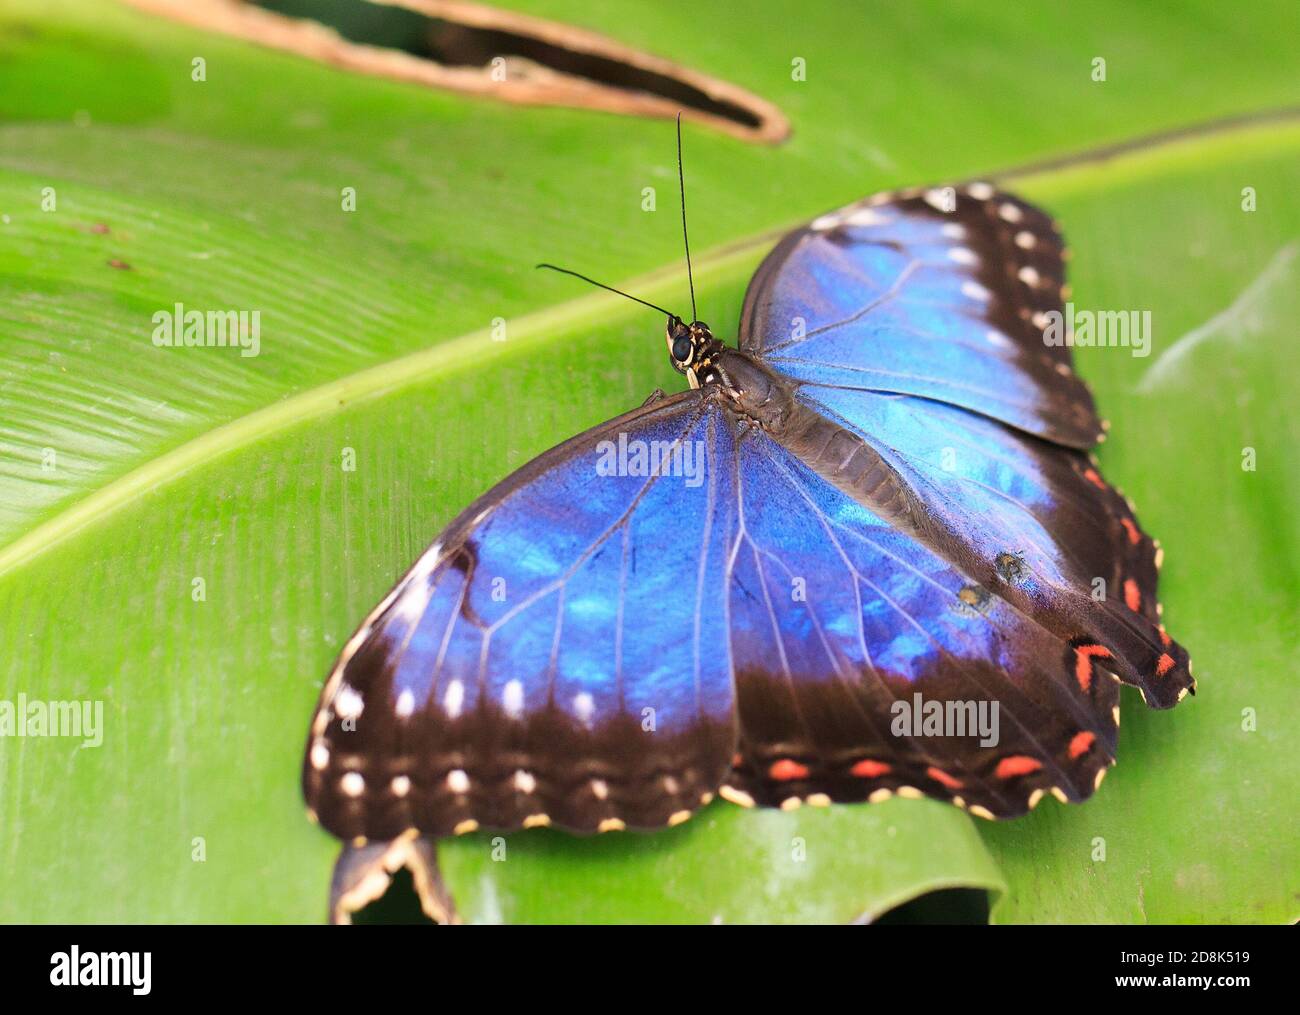 Hermosa mariposa de búho con alas azules extendidas mientras descansaba una hoja verde vibrante Foto de stock